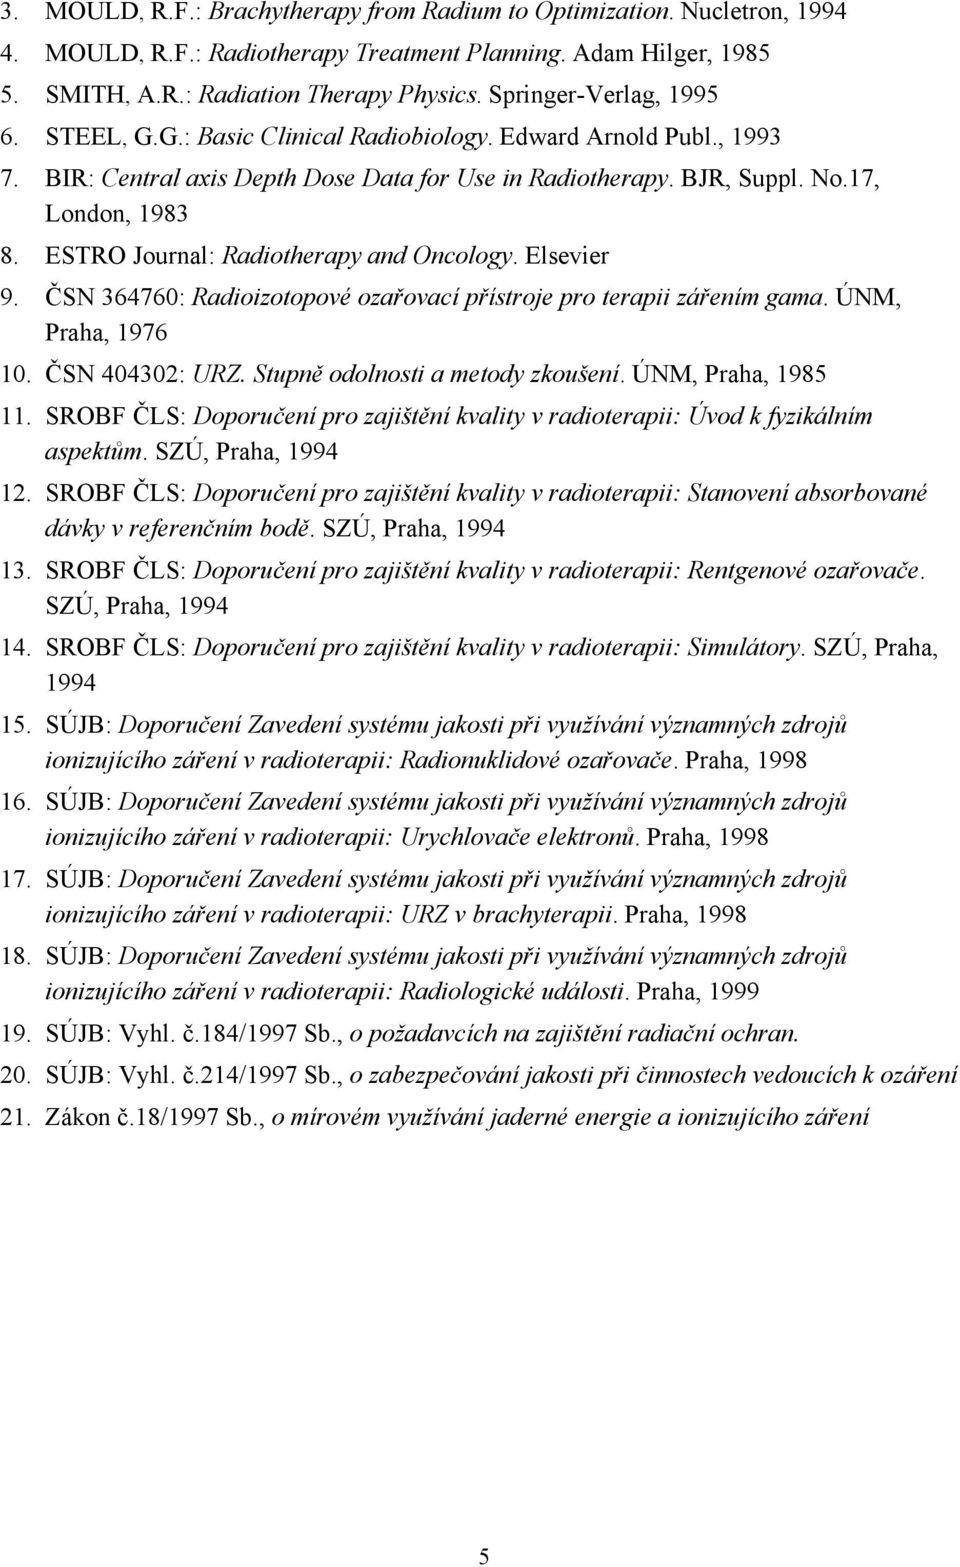 ESTRO Journal: Radiotherapy and Oncology. Elsevier 9. ČSN 364760: Radioizotopové ozařovací přístroje pro terapii zářením gama. ÚNM, Praha, 1976 10. ČSN 404302: URZ. Stupně odolnosti a metody zkoušení.